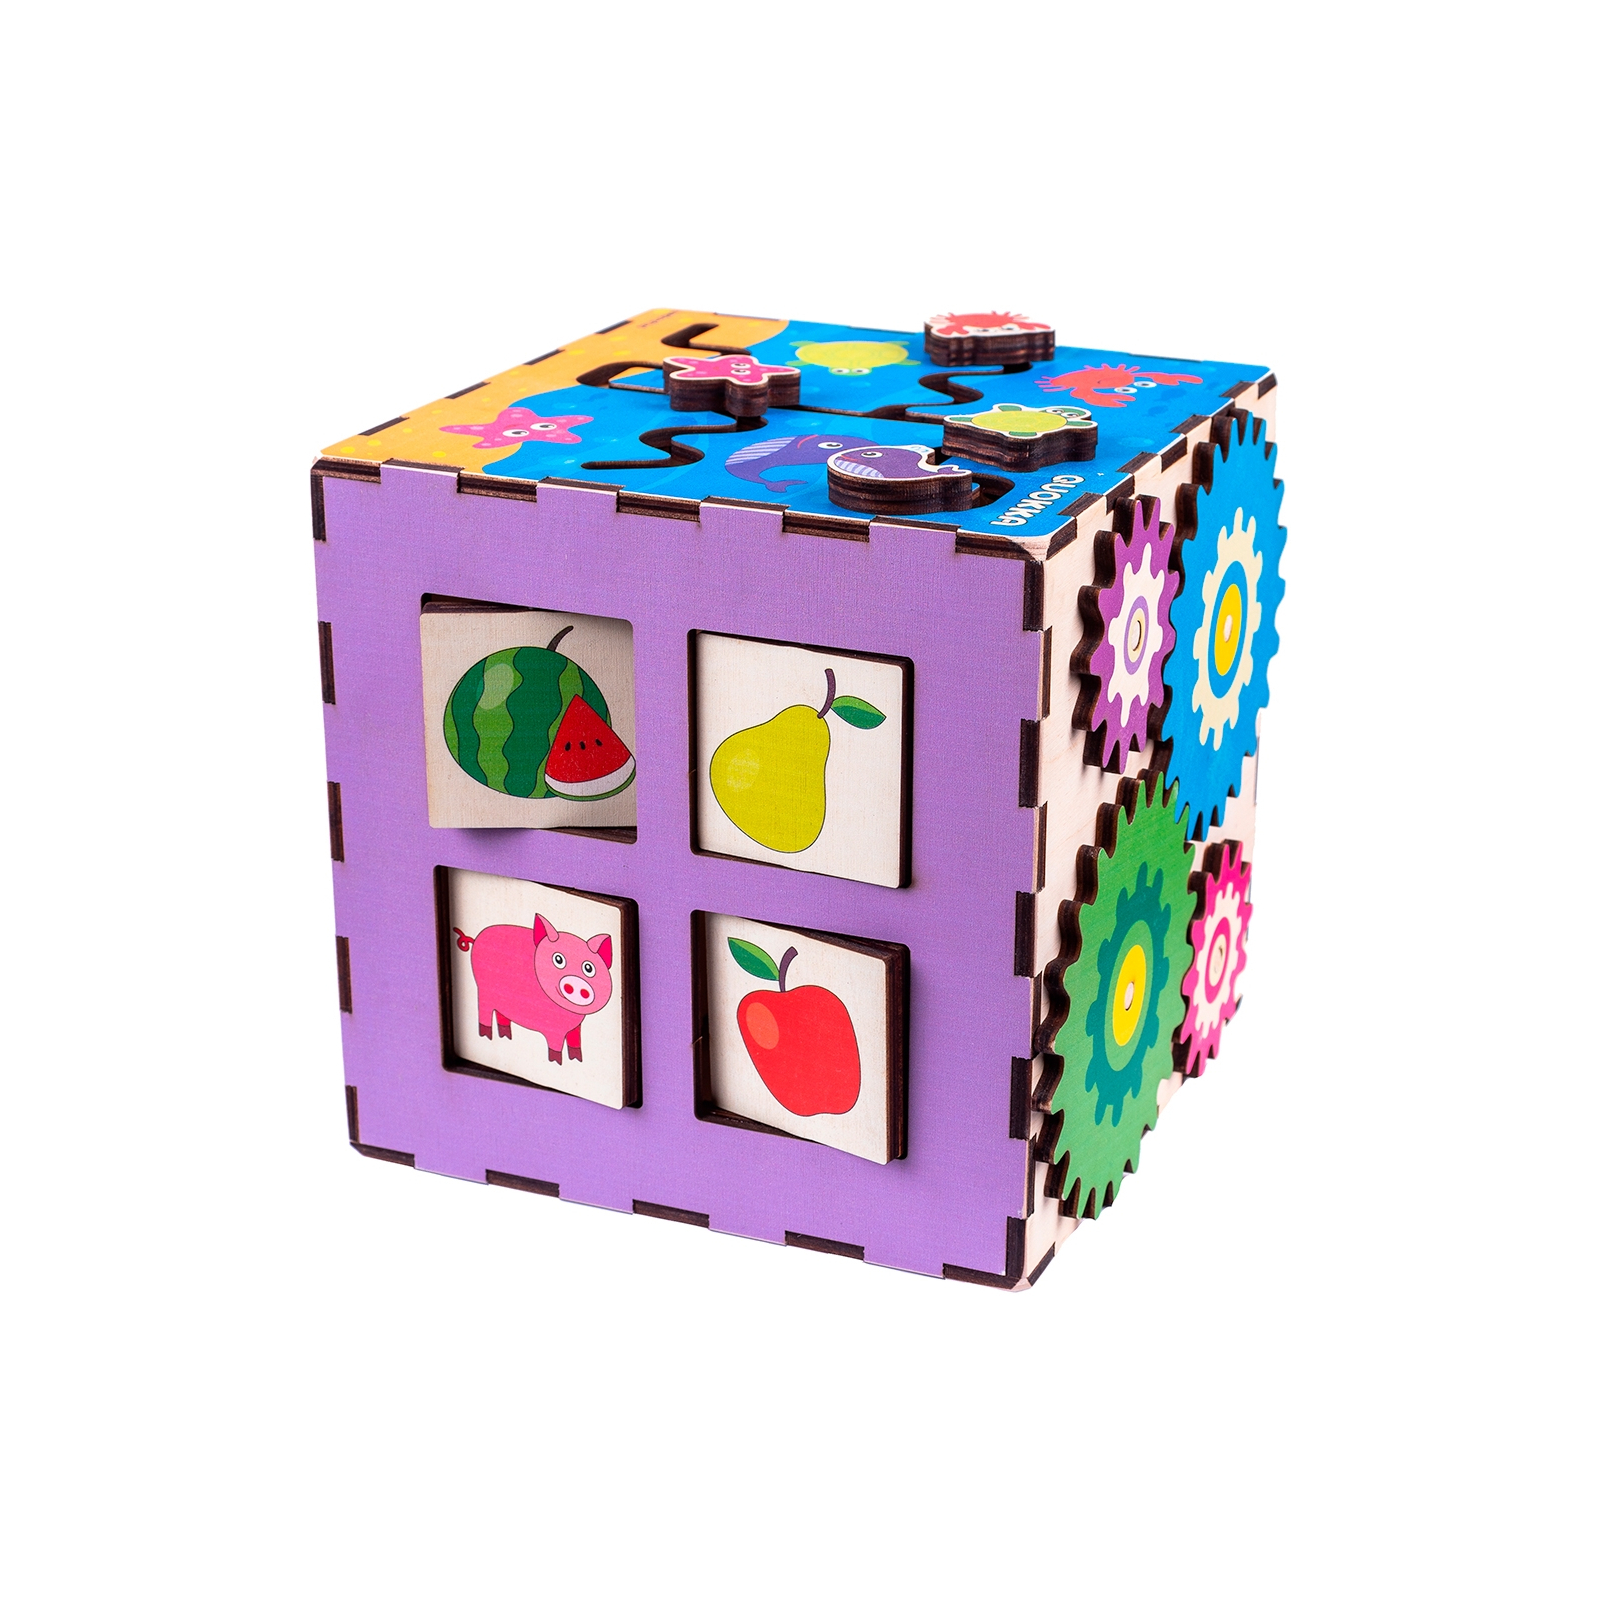 Развивающая игрушка Quokka Интерактивный куб 20х20 см (QUOKA002A) изображение 4